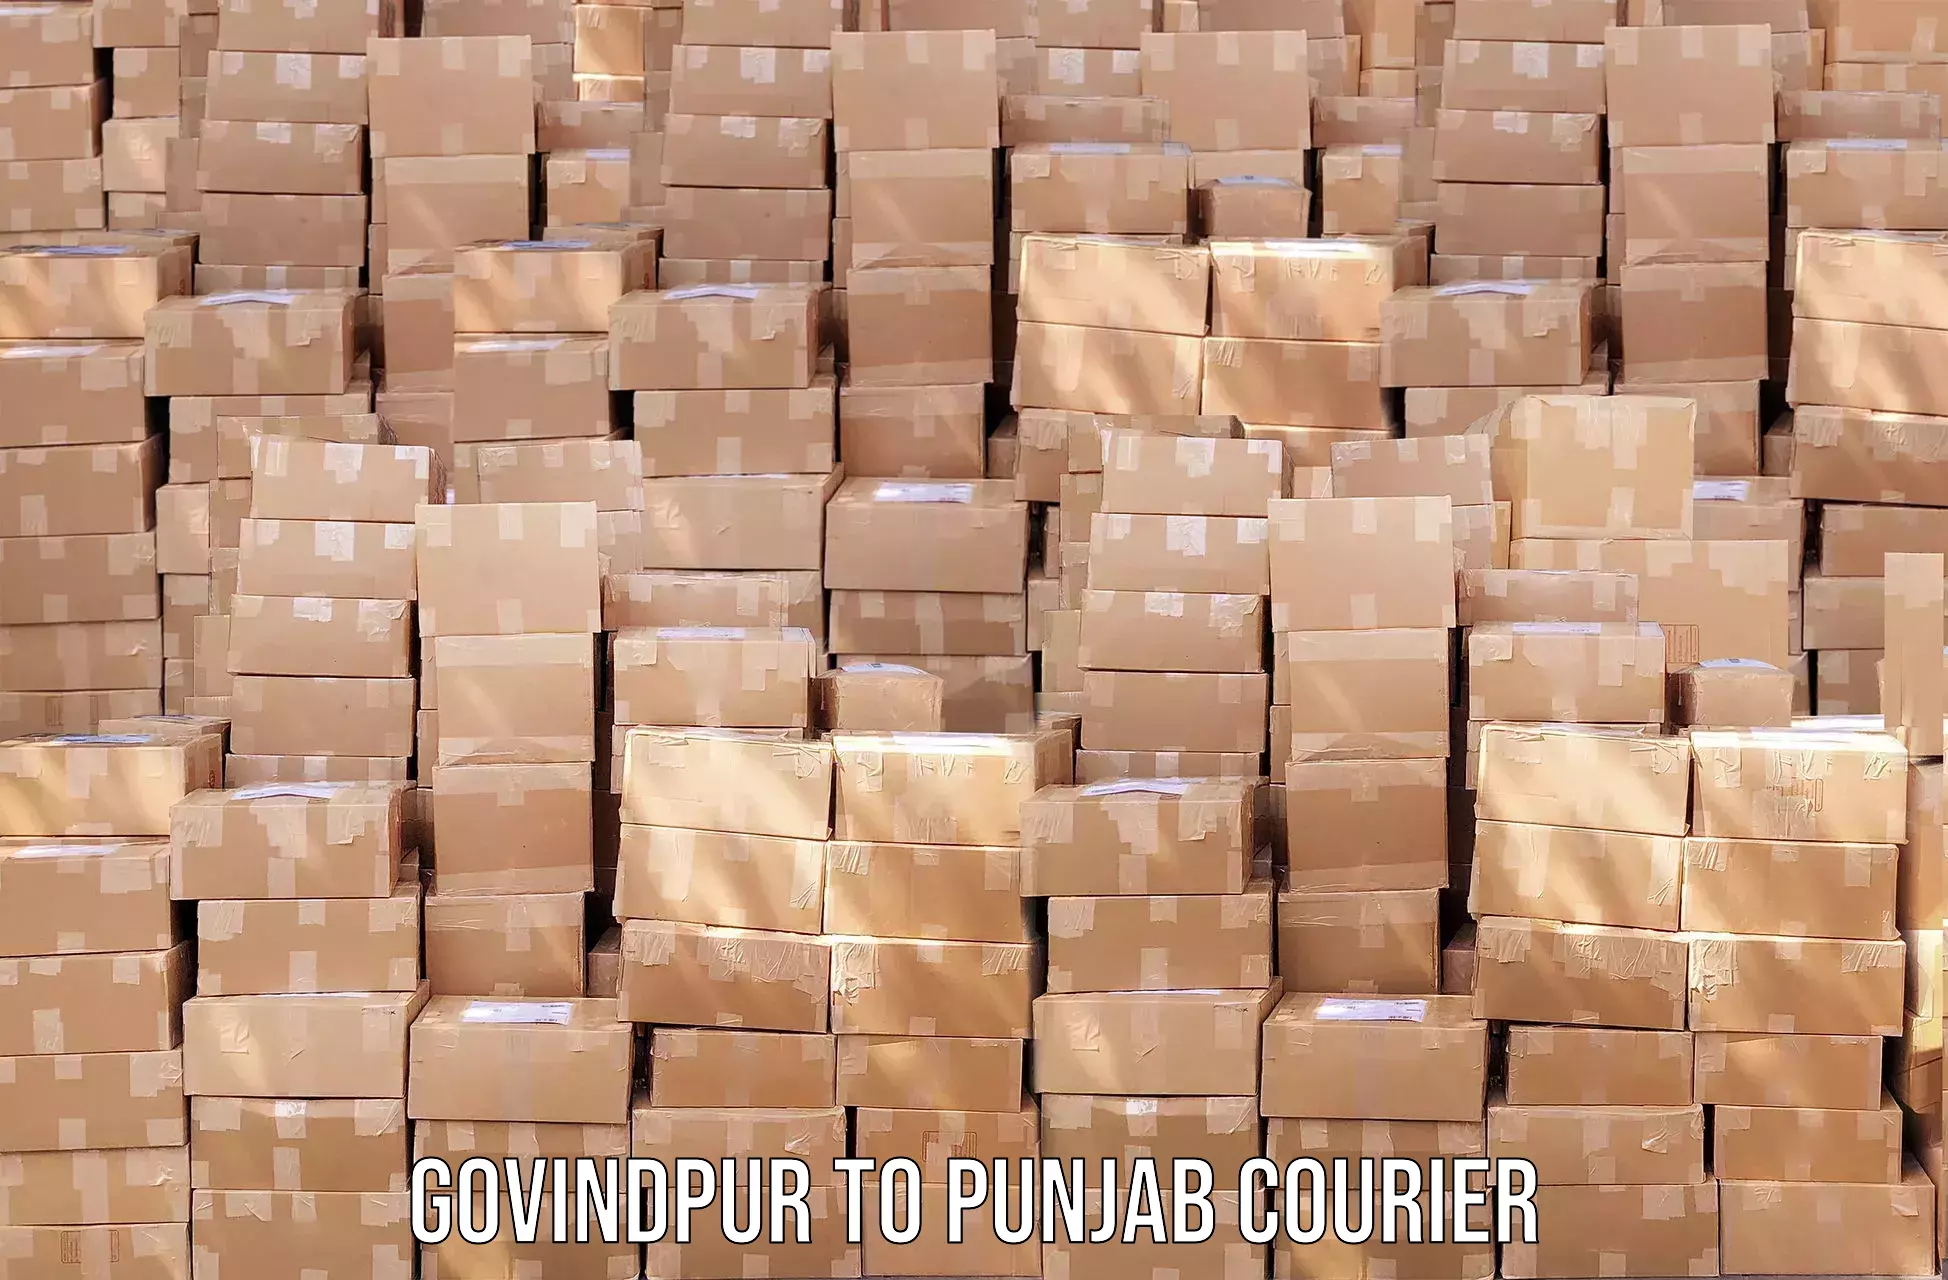 Parcel handling and care Govindpur to Punjab